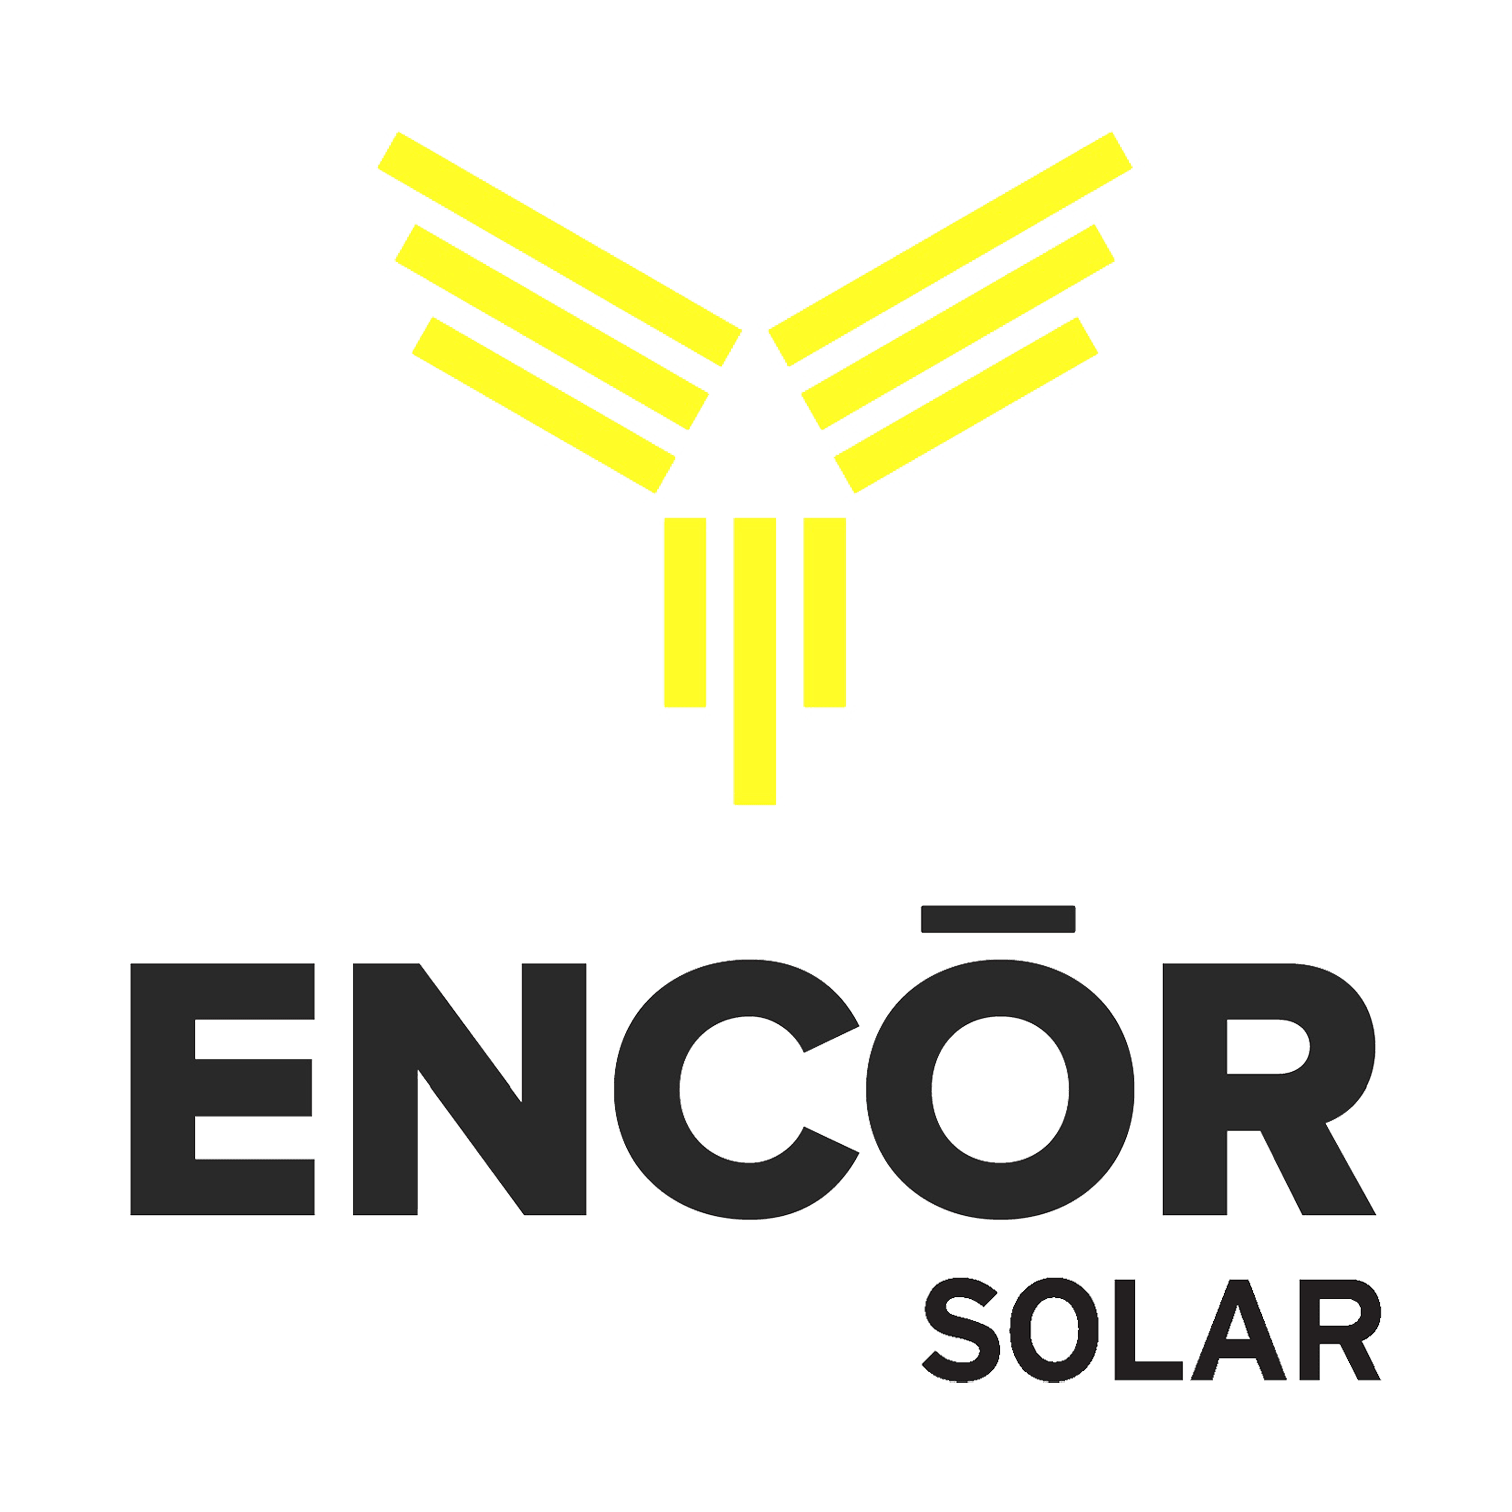 Er Encor Solar et godt selskap?